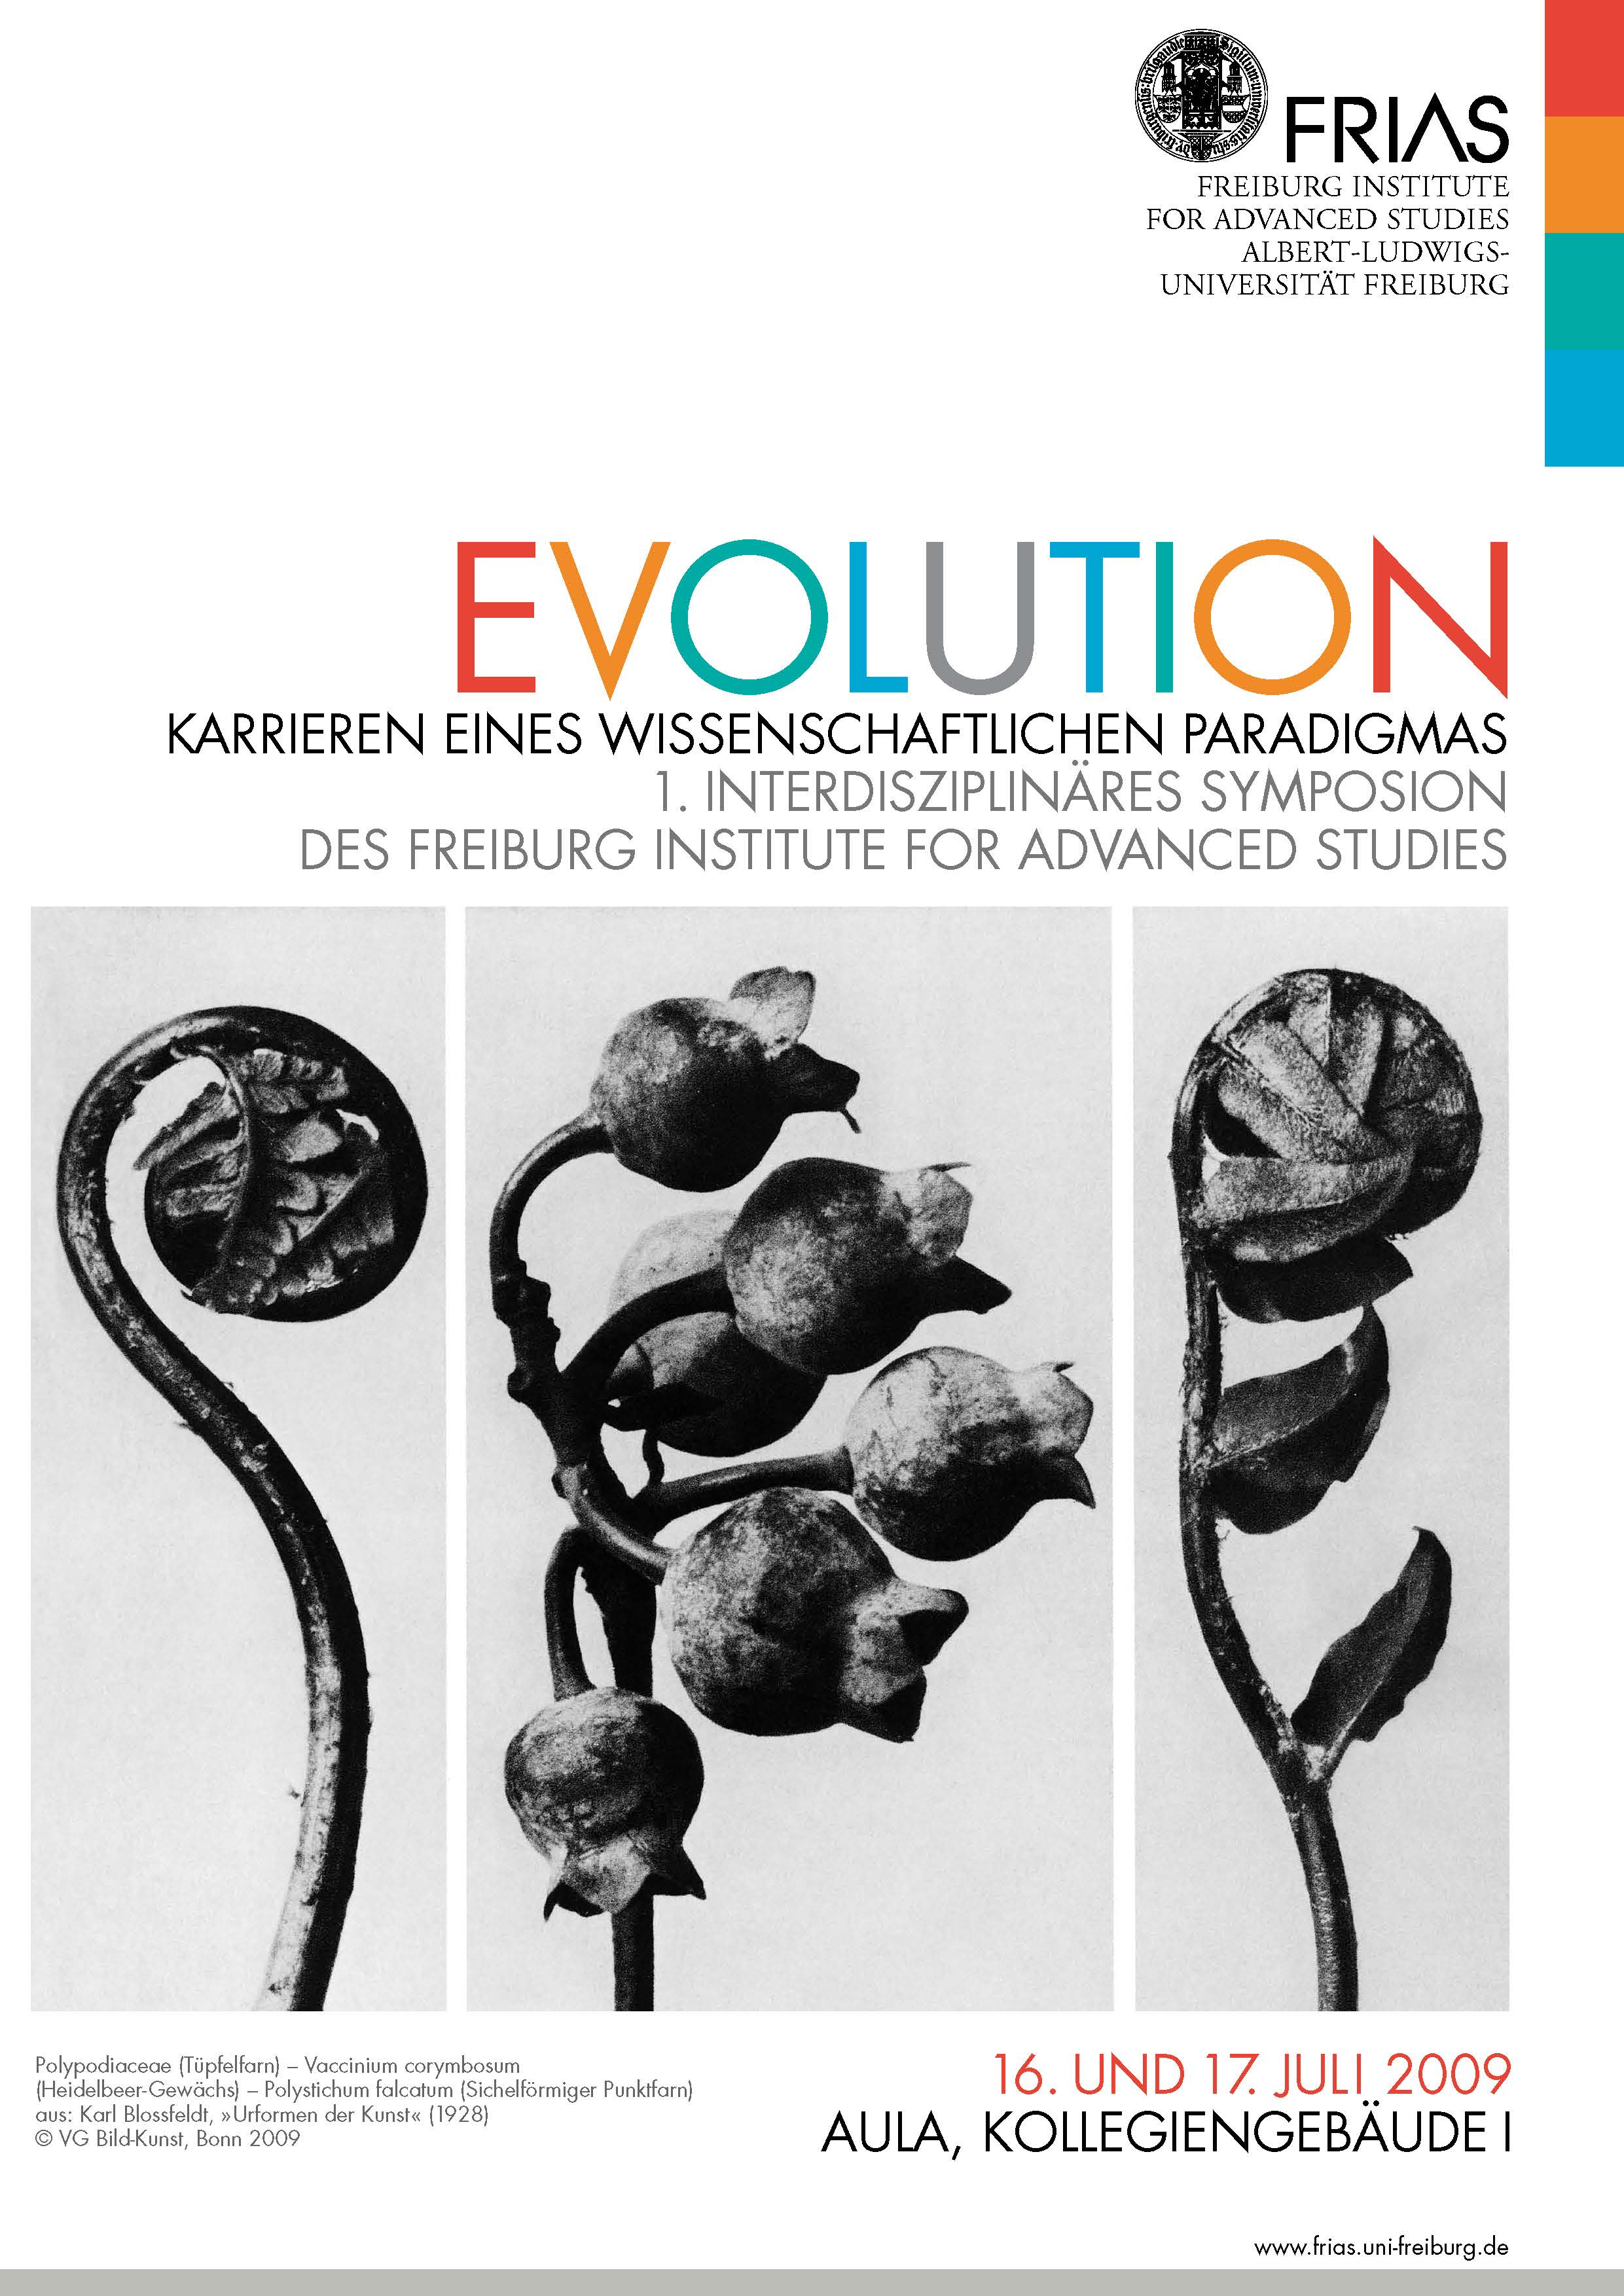 Videomitschnitte zum Symposion „Evolution: Karrieren eines wissenschaftlichen Paradigmas“ veröffentlicht